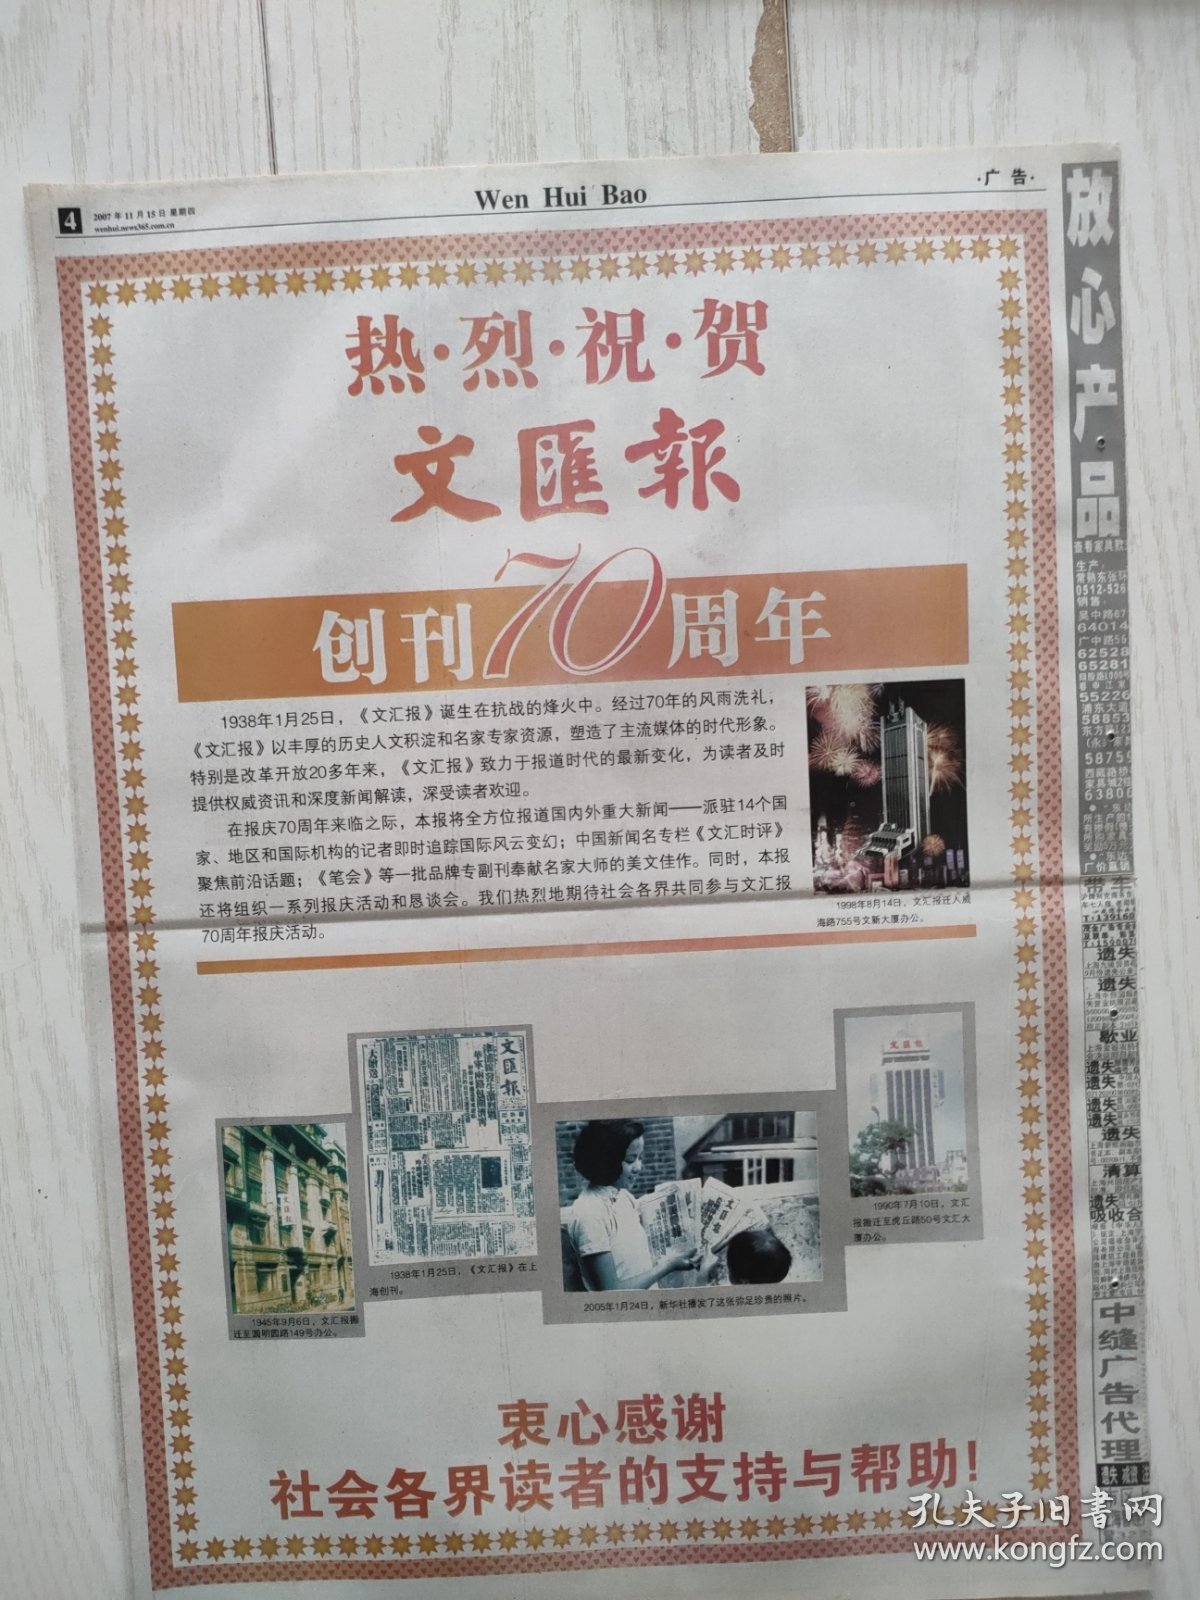 文汇报2007年11月15日12版全，第二届中国龙泉青瓷龙泉宝剑节隆重举行。上海为图书美容做嫁衣。热烈祝贺文汇报创刊70周年。